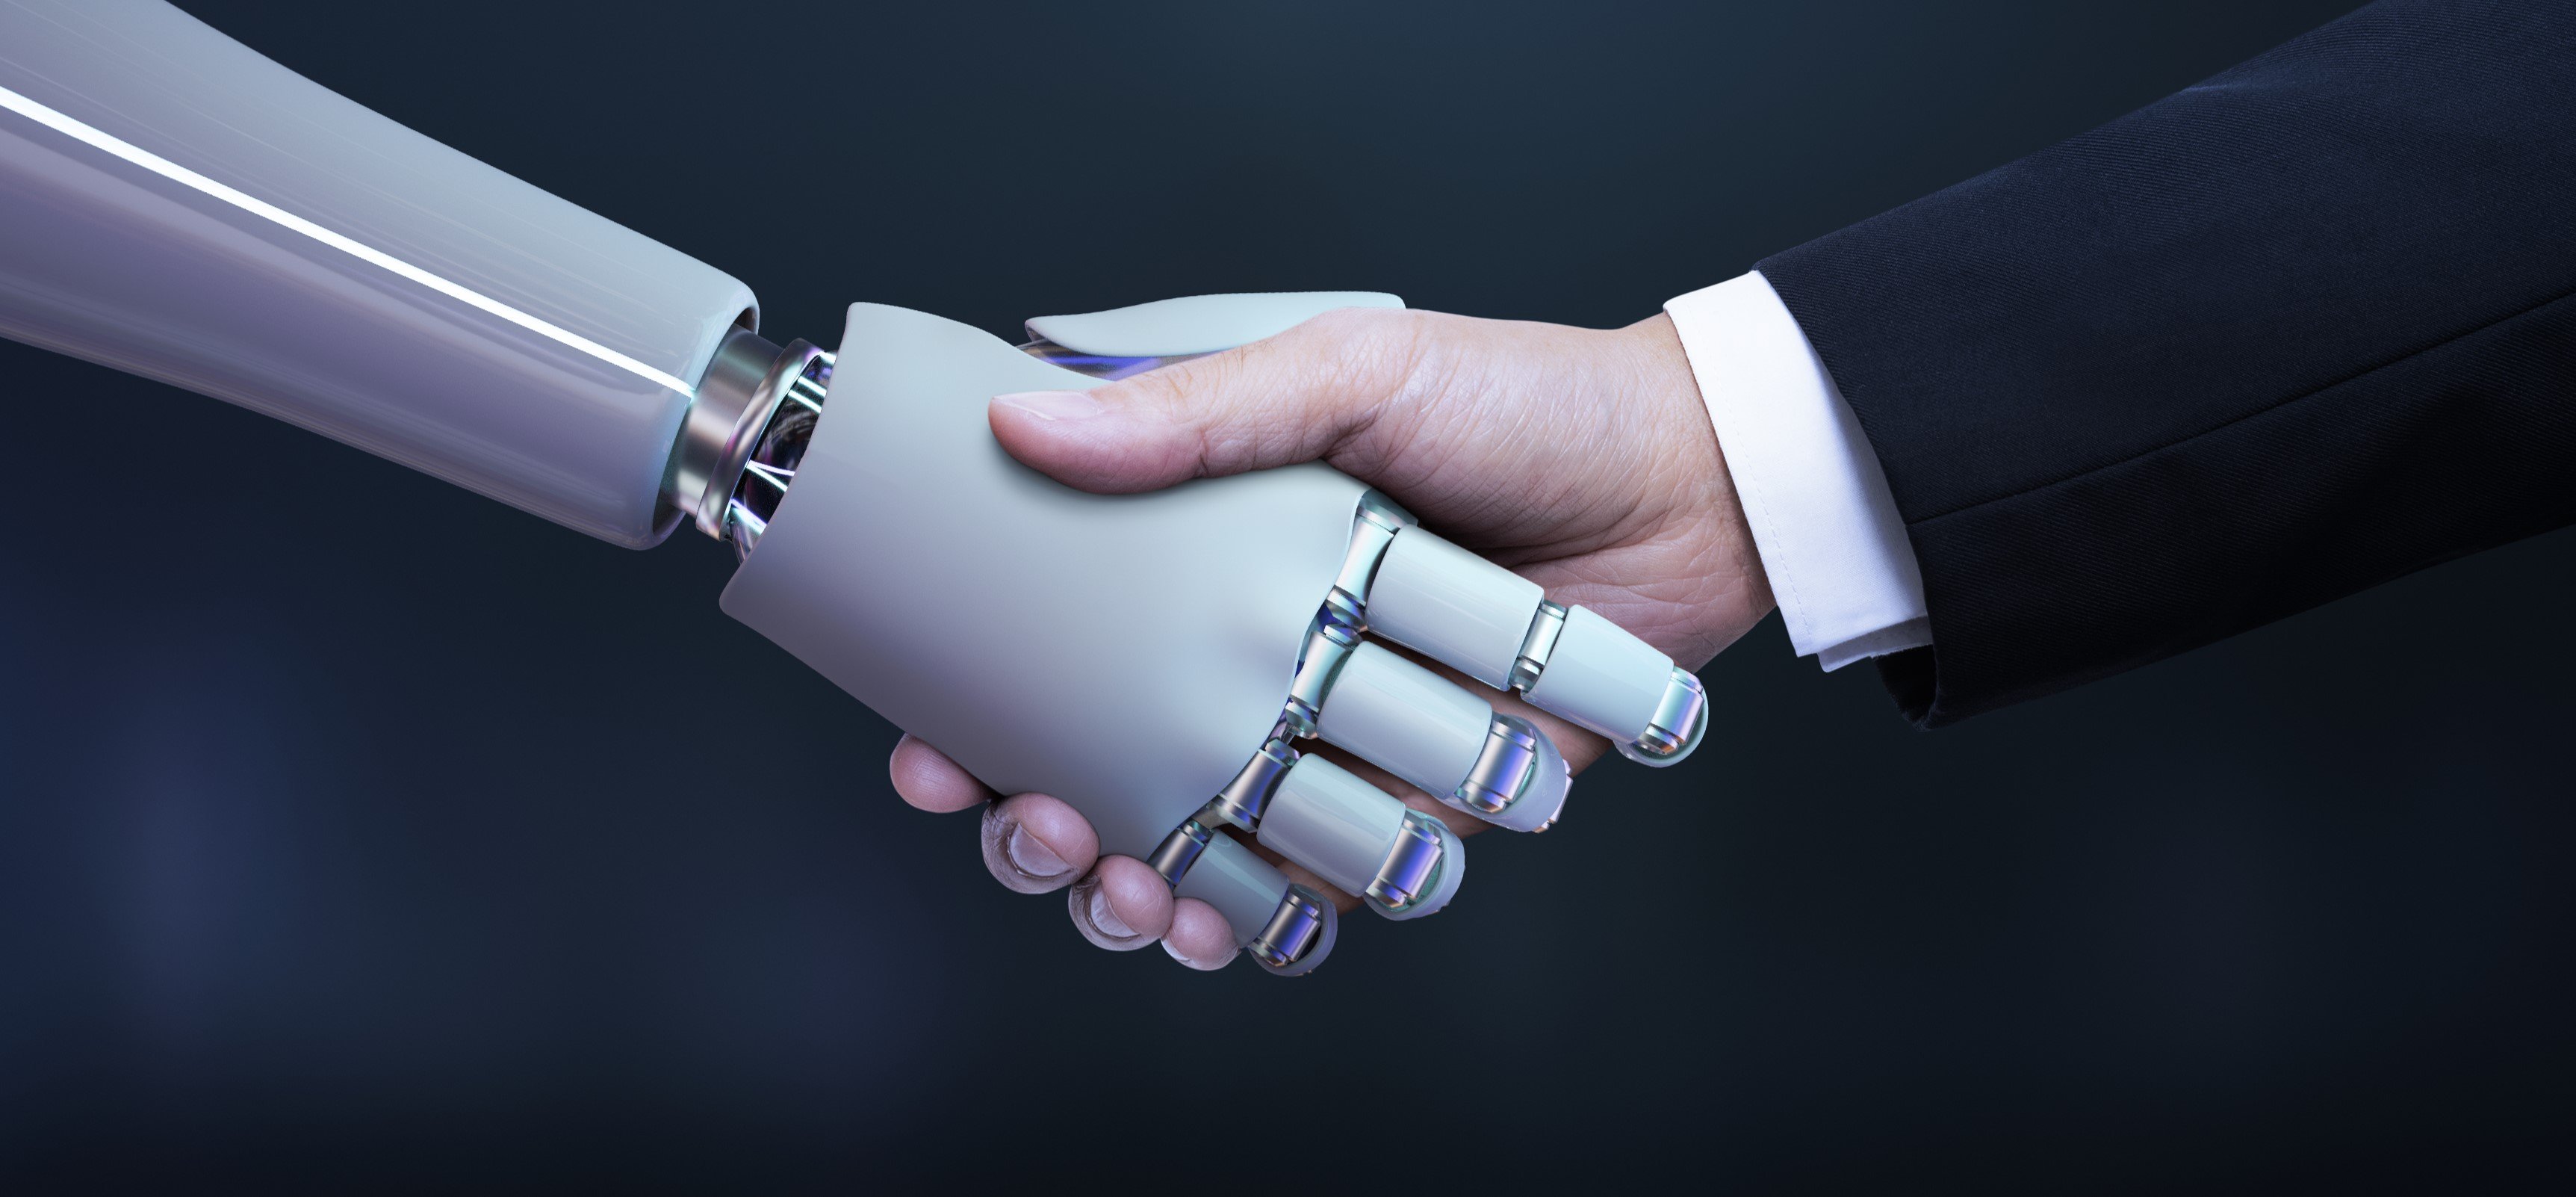 Poignée de main entre un humain et un robot